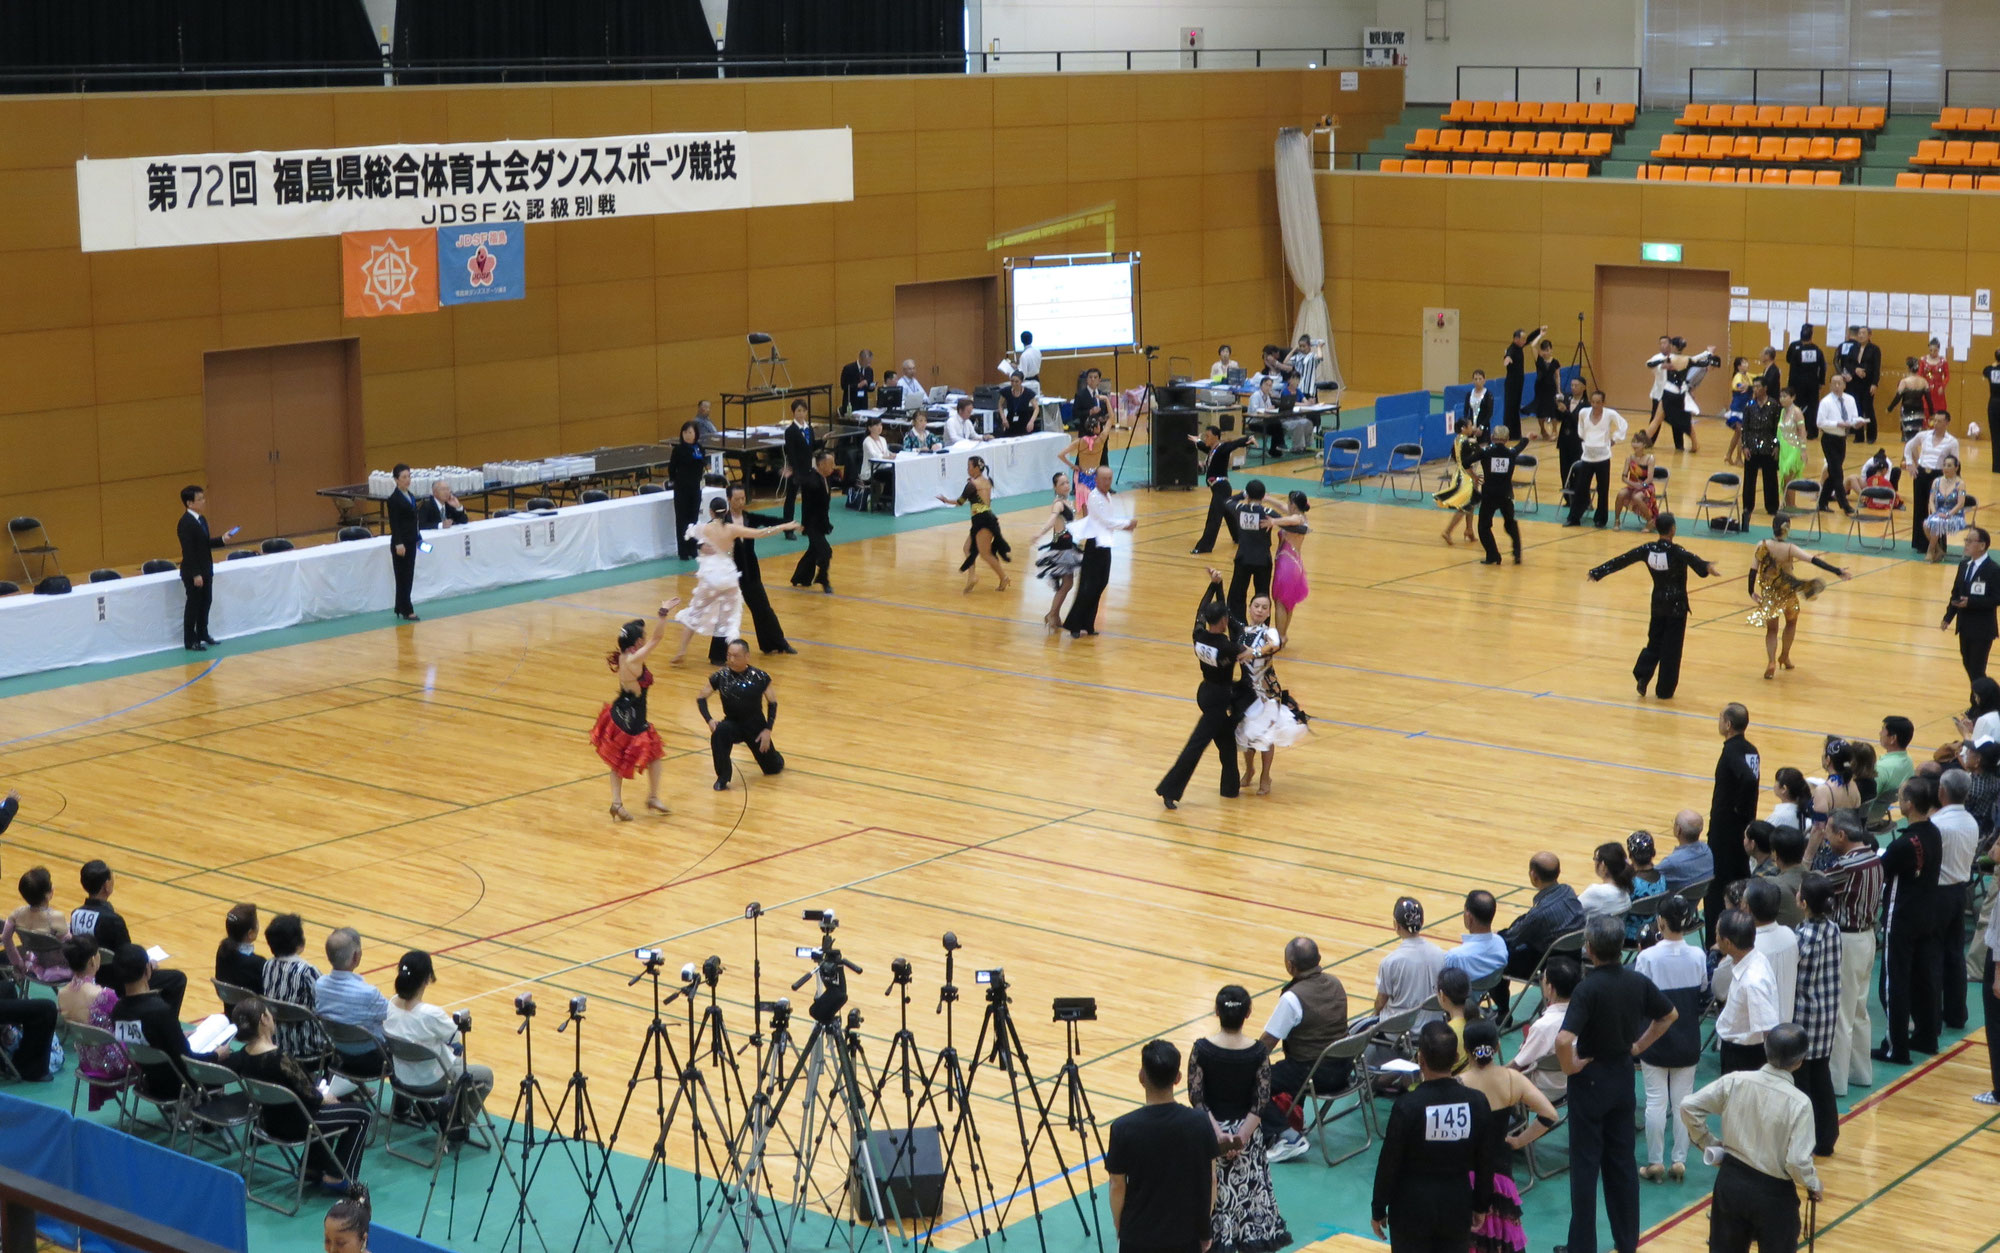 2023.06.17　6/25開催の「第76回県総合スポーツ大会・D S競技会」のタイムテーブルを掲載しました